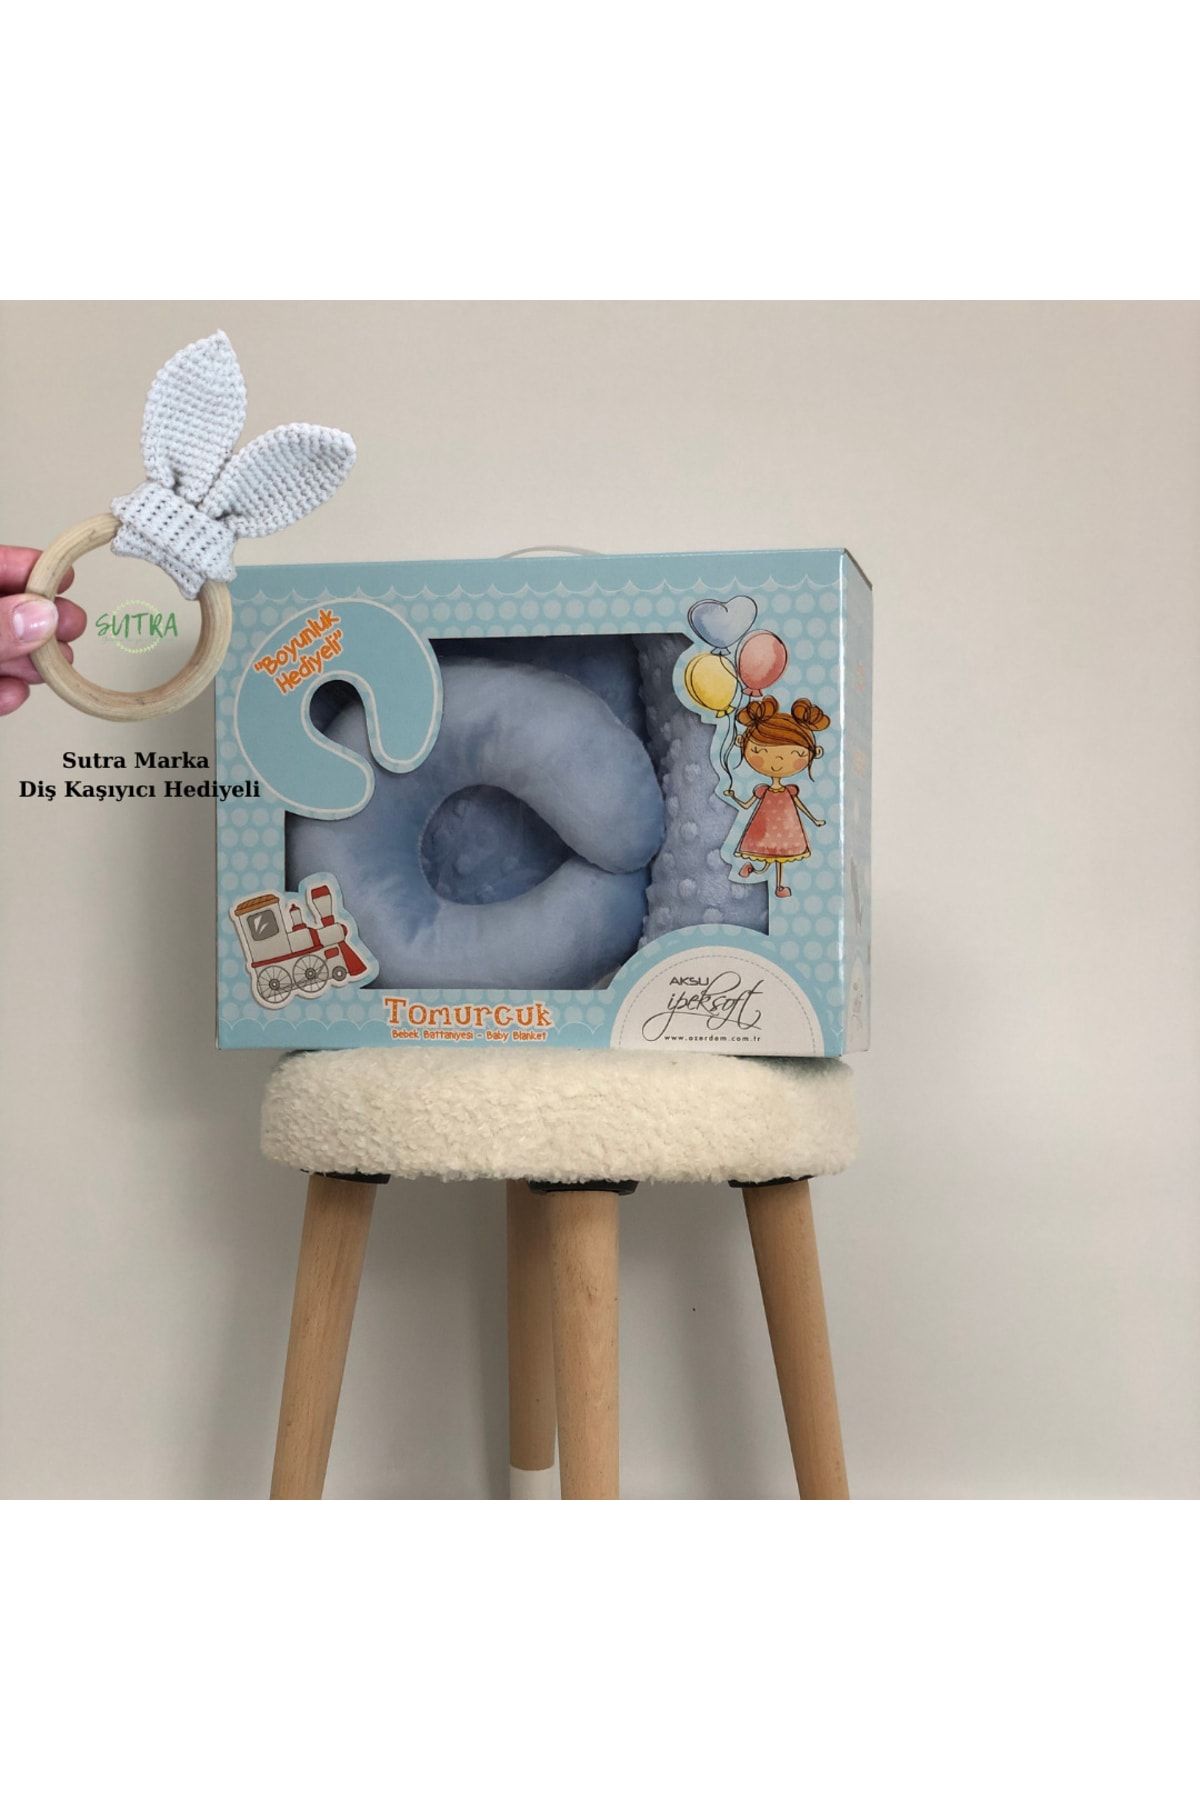 AKSU Ipeksoft Kutulu Boyun Yastıklı Sutra Marka Diş Kaşıyıcı Hediyeli Bebek Battaniyesi